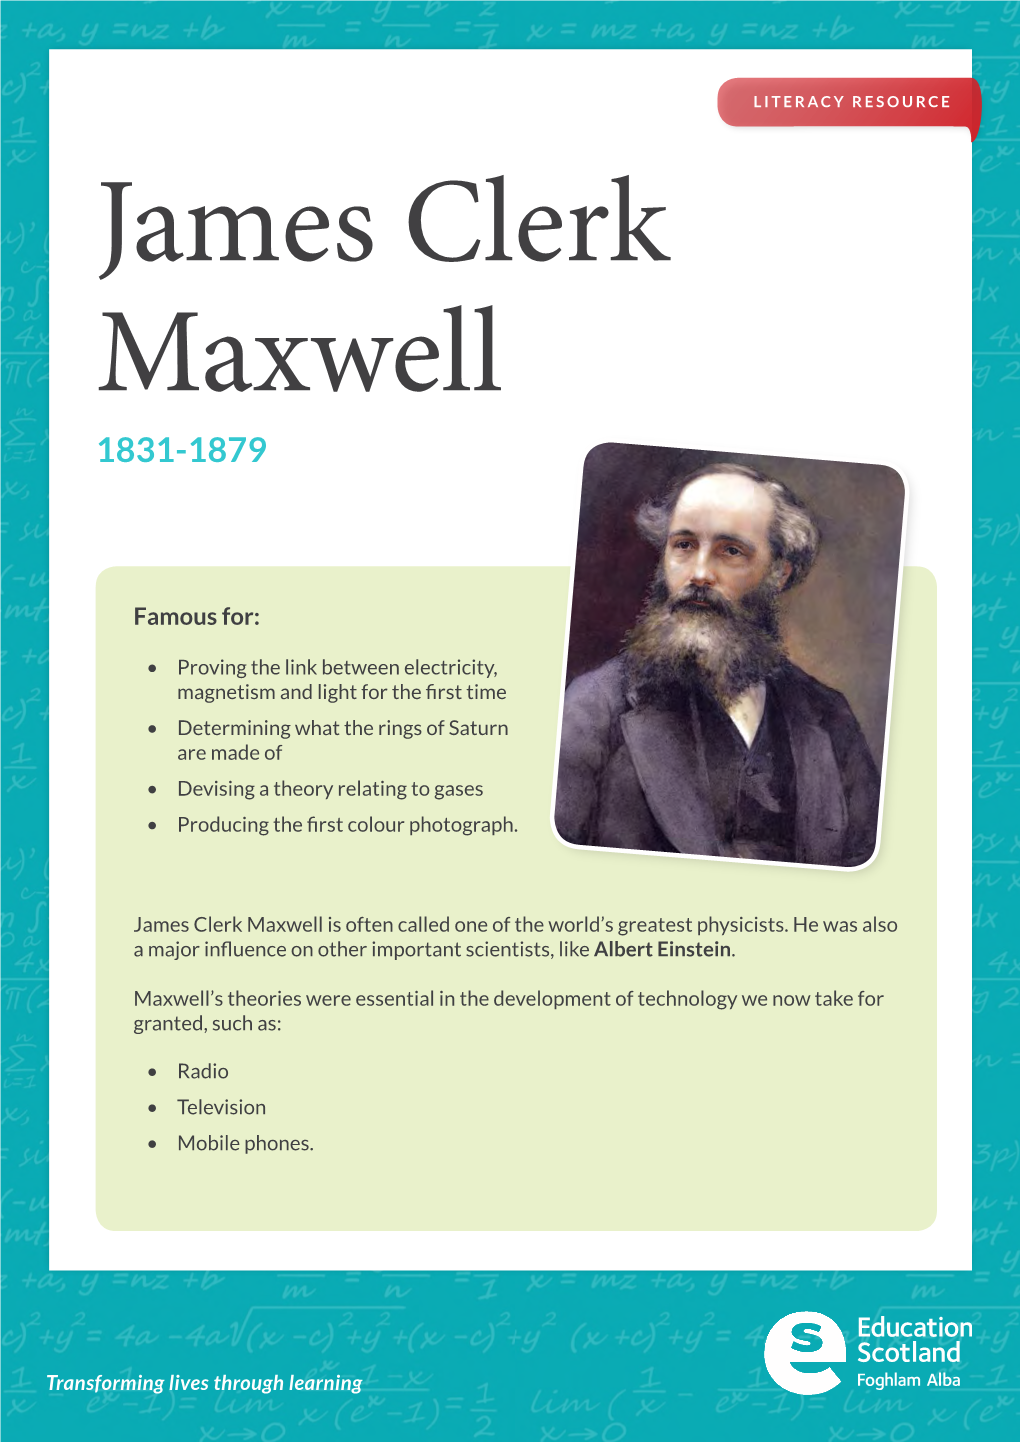 James Clerk Maxwell 1831-1879